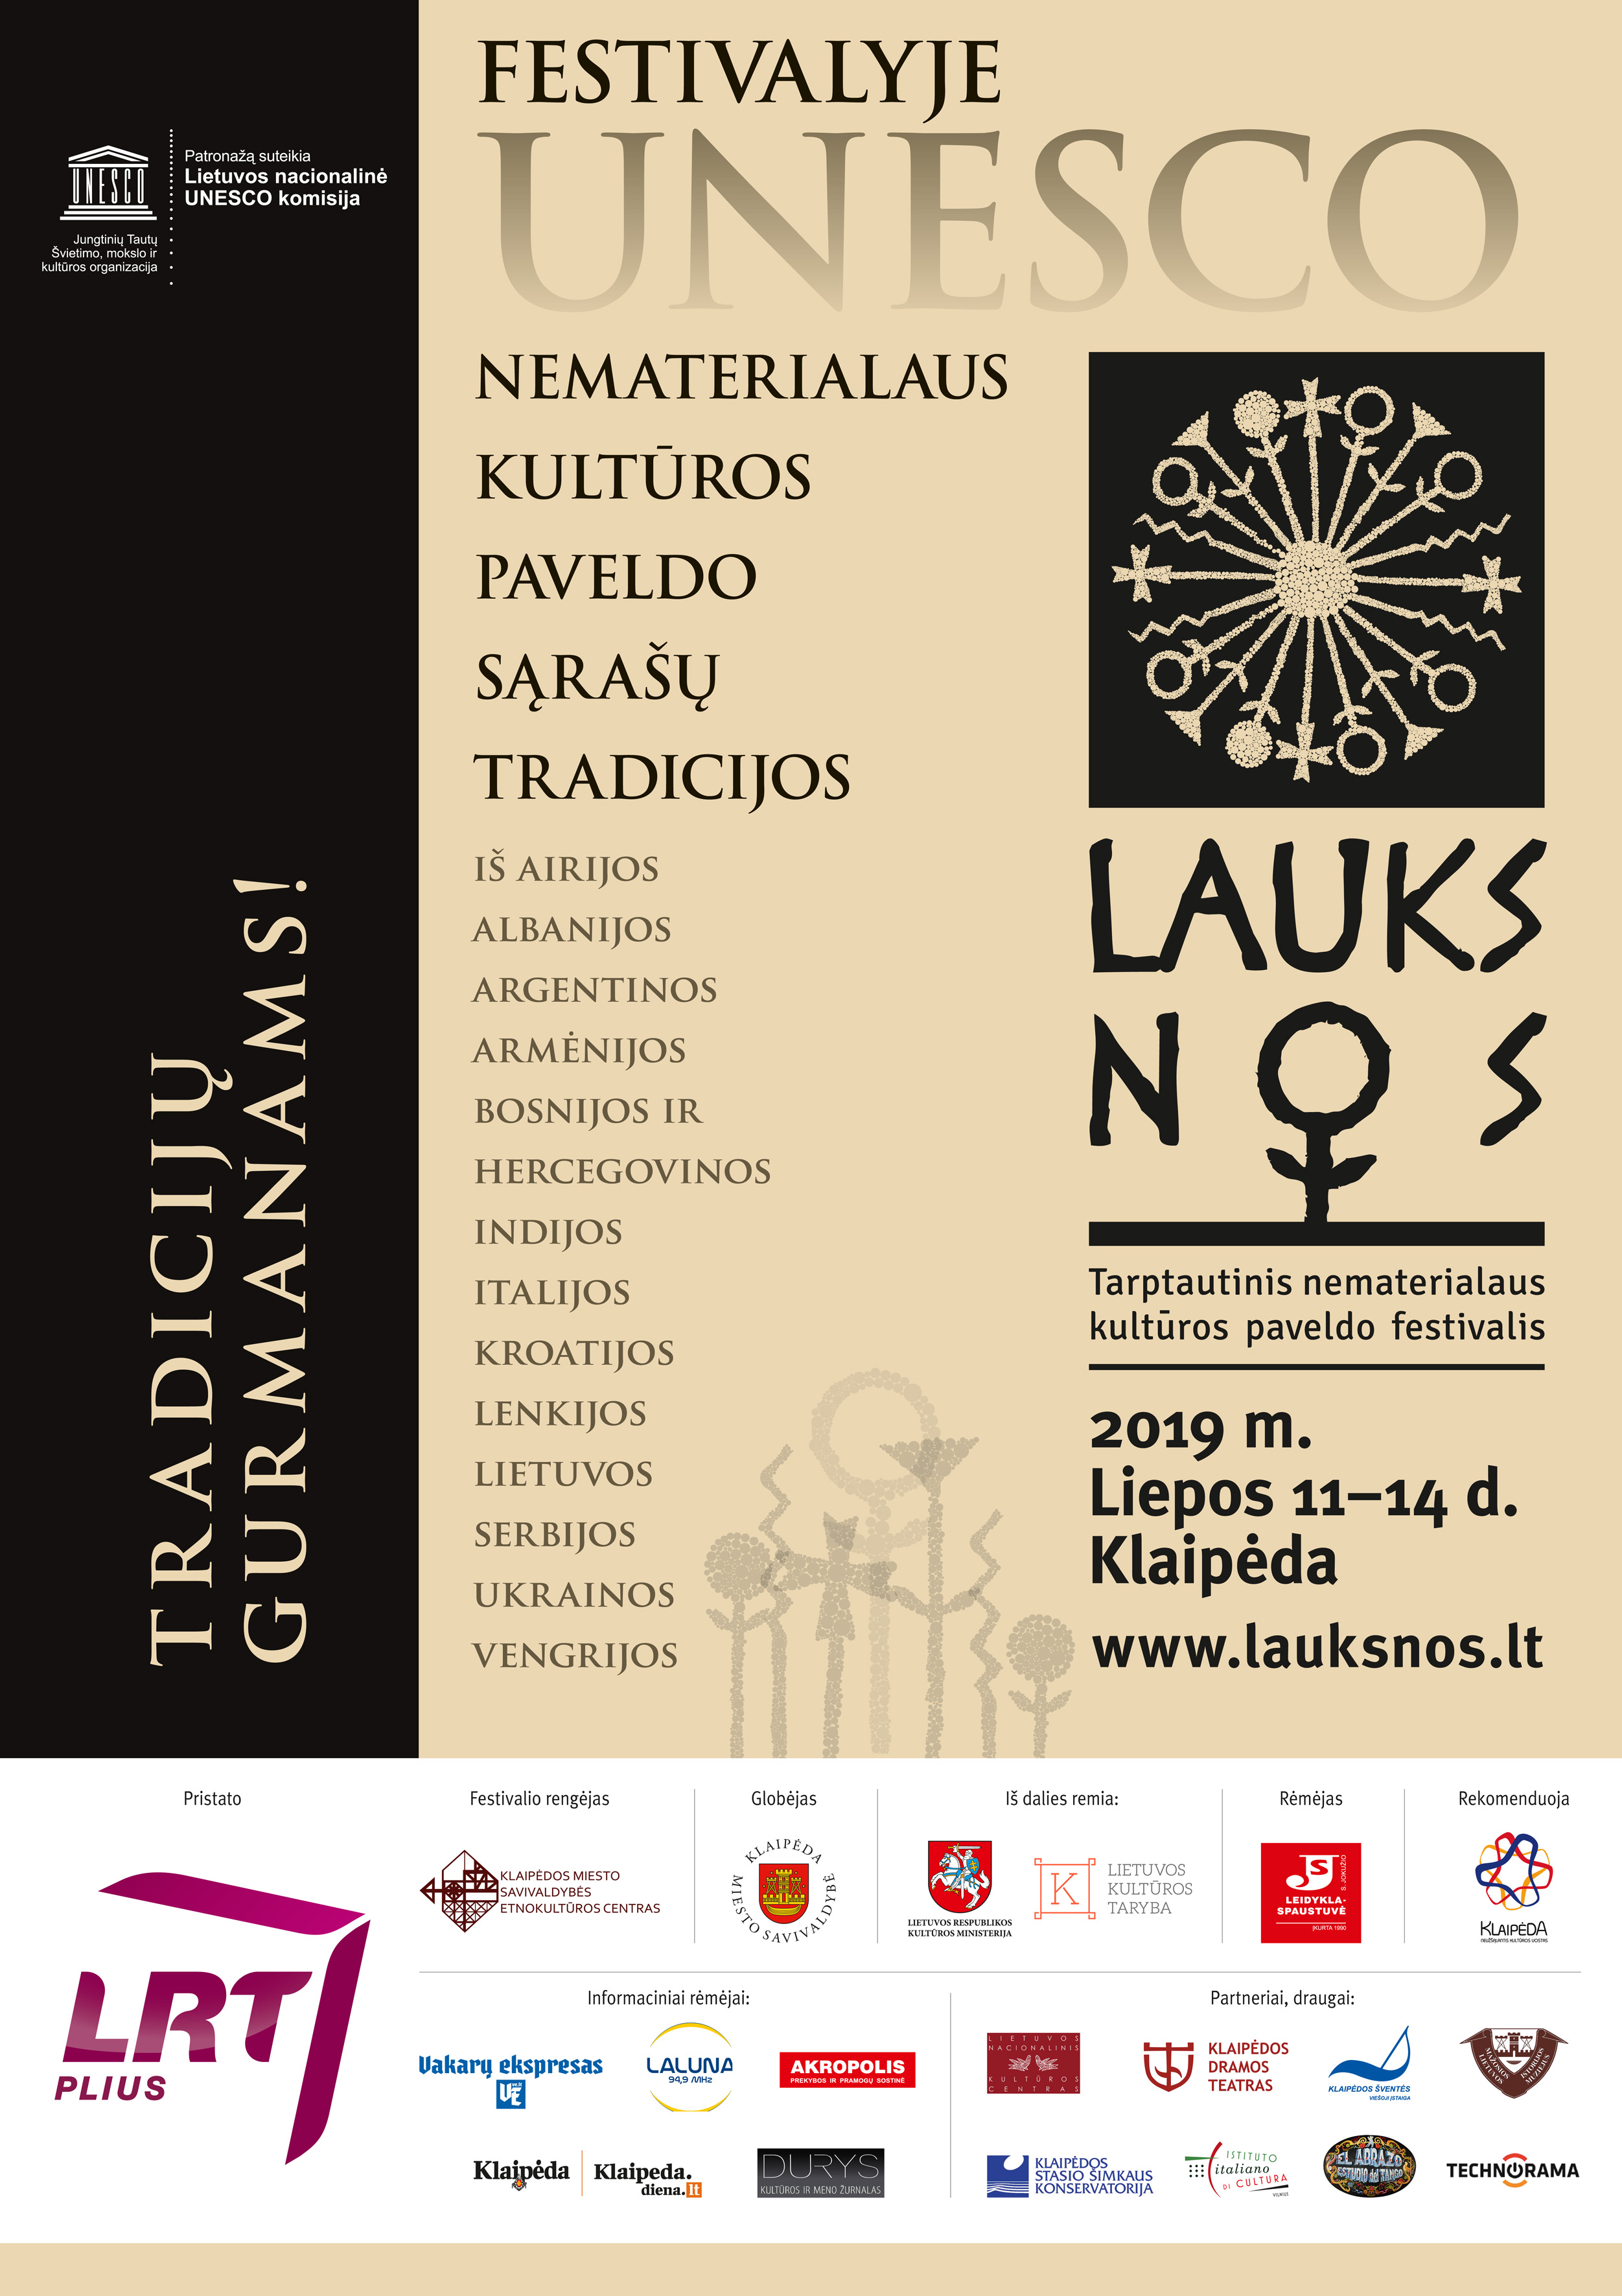 Renginys LAUKSNOS liepos 11-14 d. Klaipėda, programa | Klaipėdos etnokultūros centro nuotr.